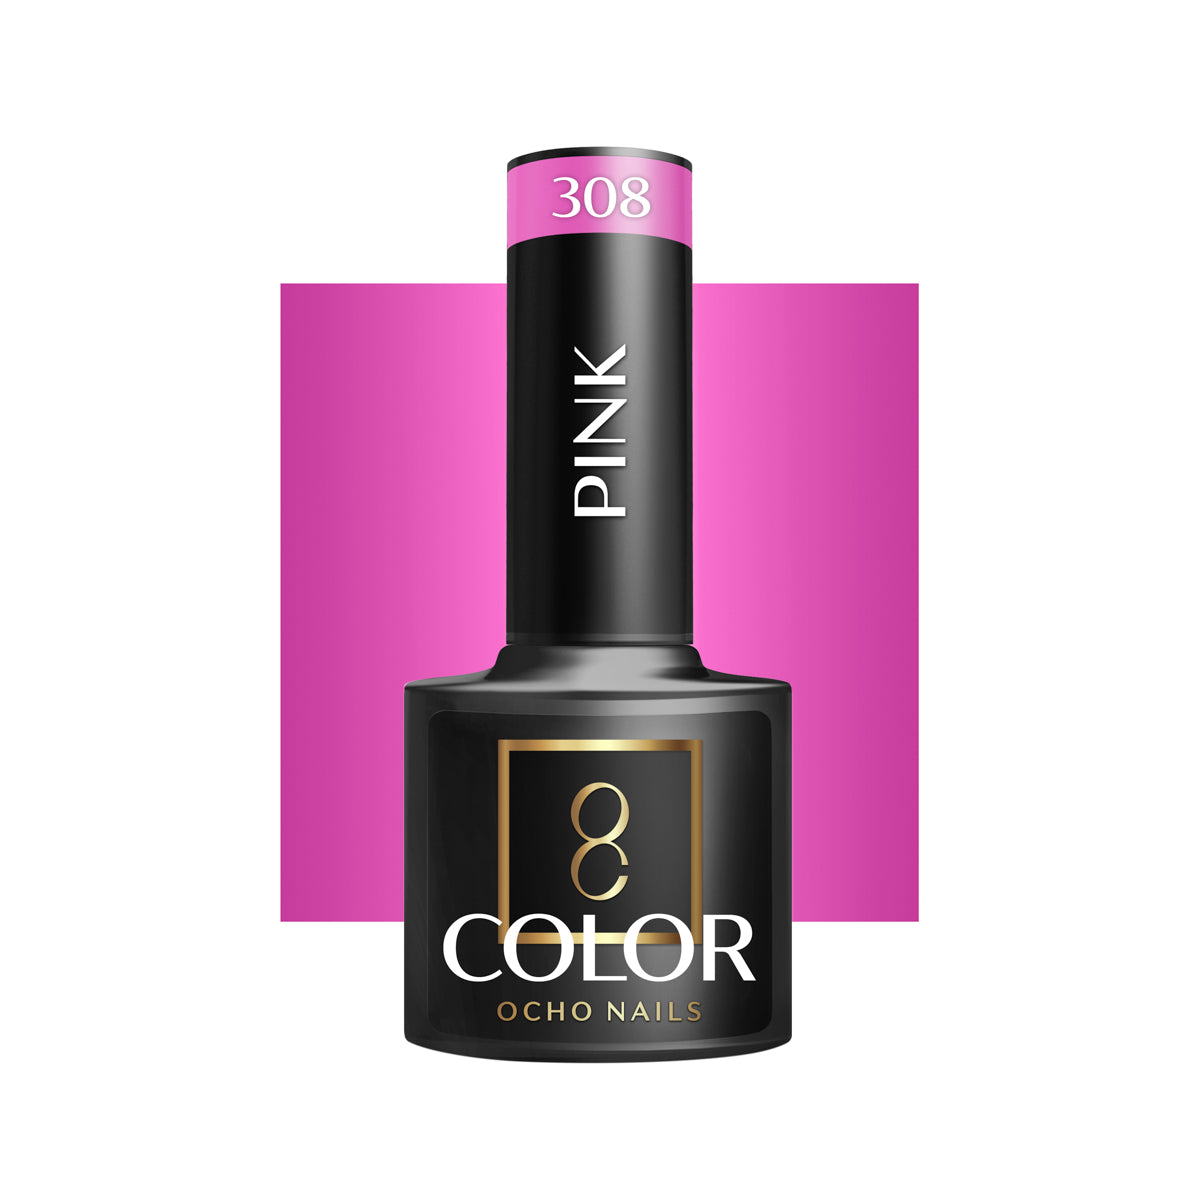 OCHO NAILS Hybride nagellak roze 308 -5 g